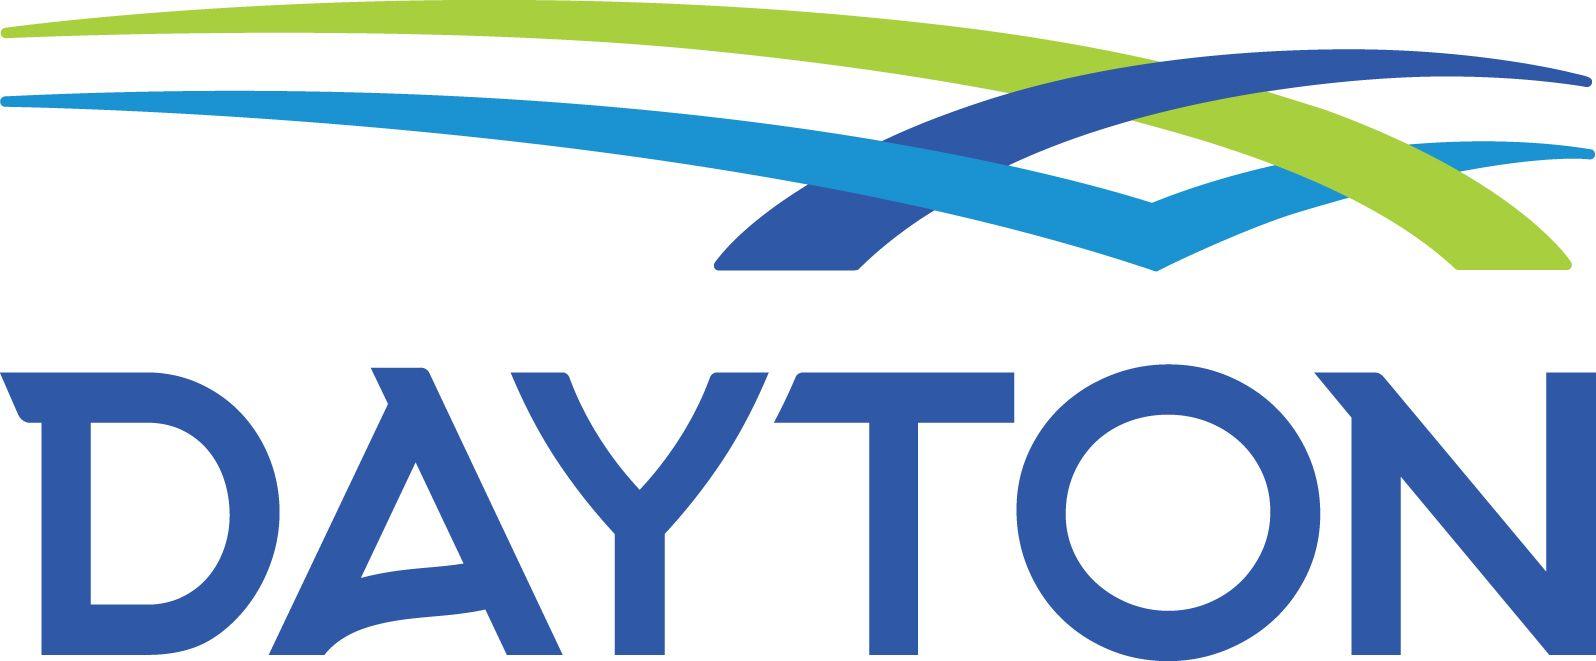 Dayton Logo - City of Dayton has new logo, website | Dayton, Ohio